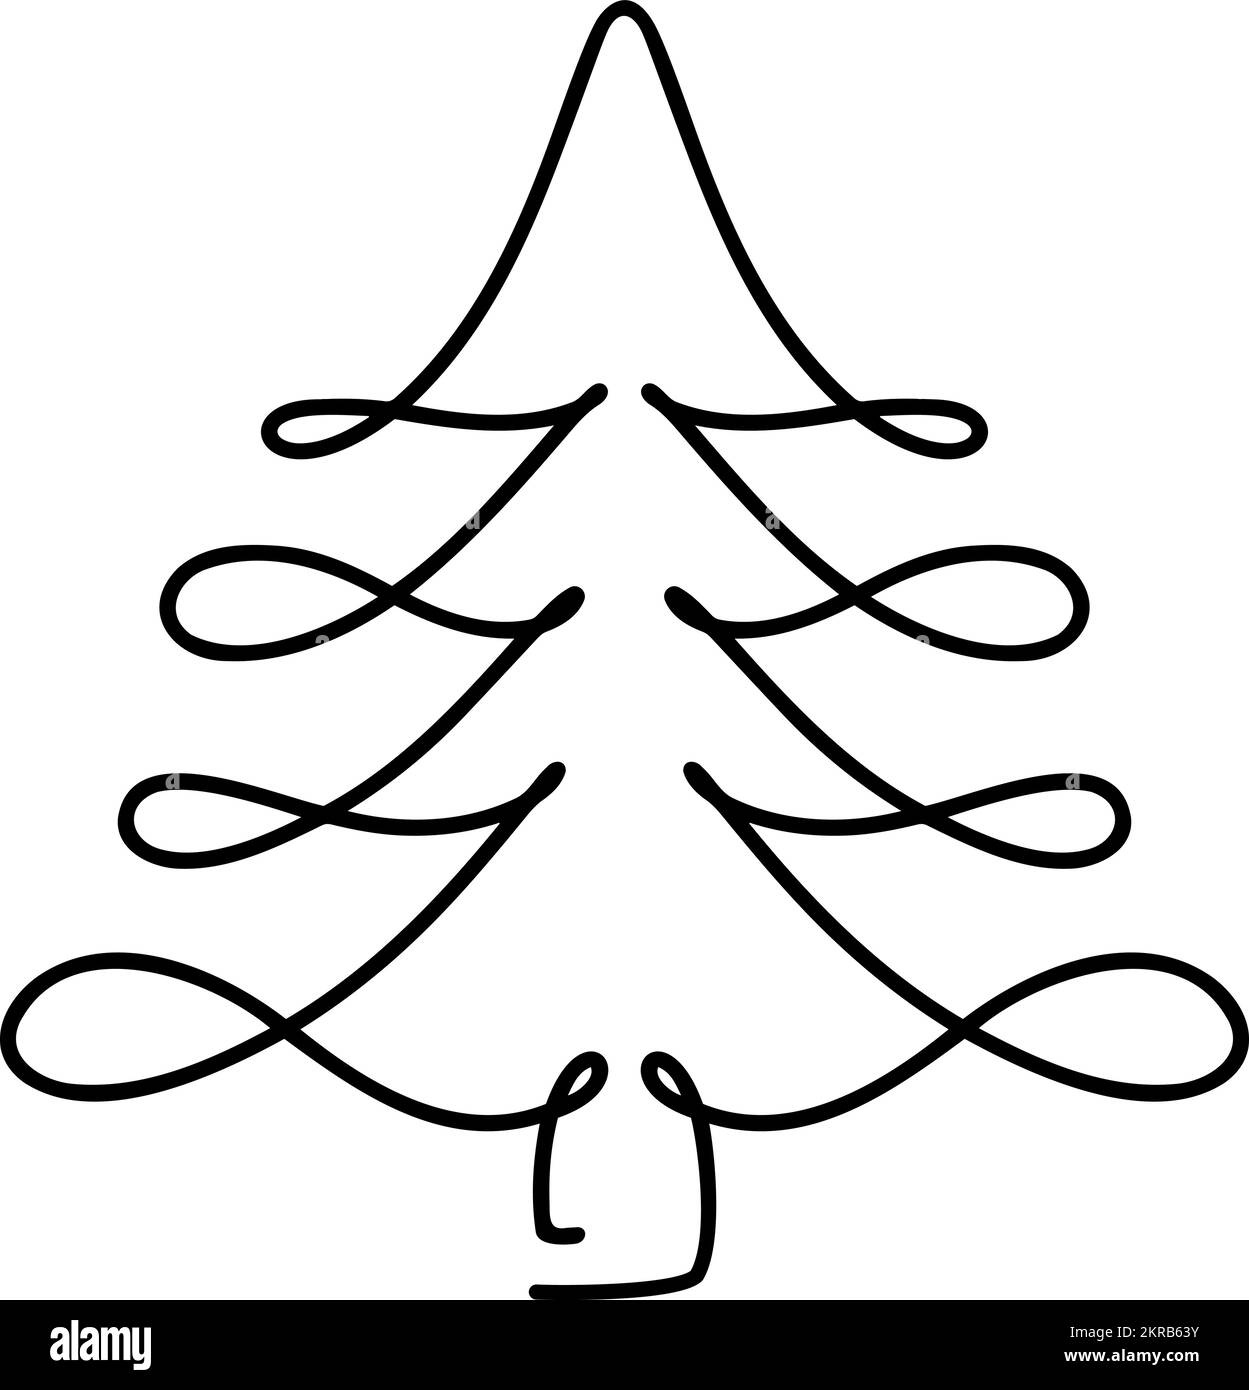 Vektor Weihnachtstanne Baum Monolin Kunst. Durchgehende einzeilige Pinie. Illustration minimalistisches Design für das Konzept „Weihnachten und Neujahr“ Stock Vektor